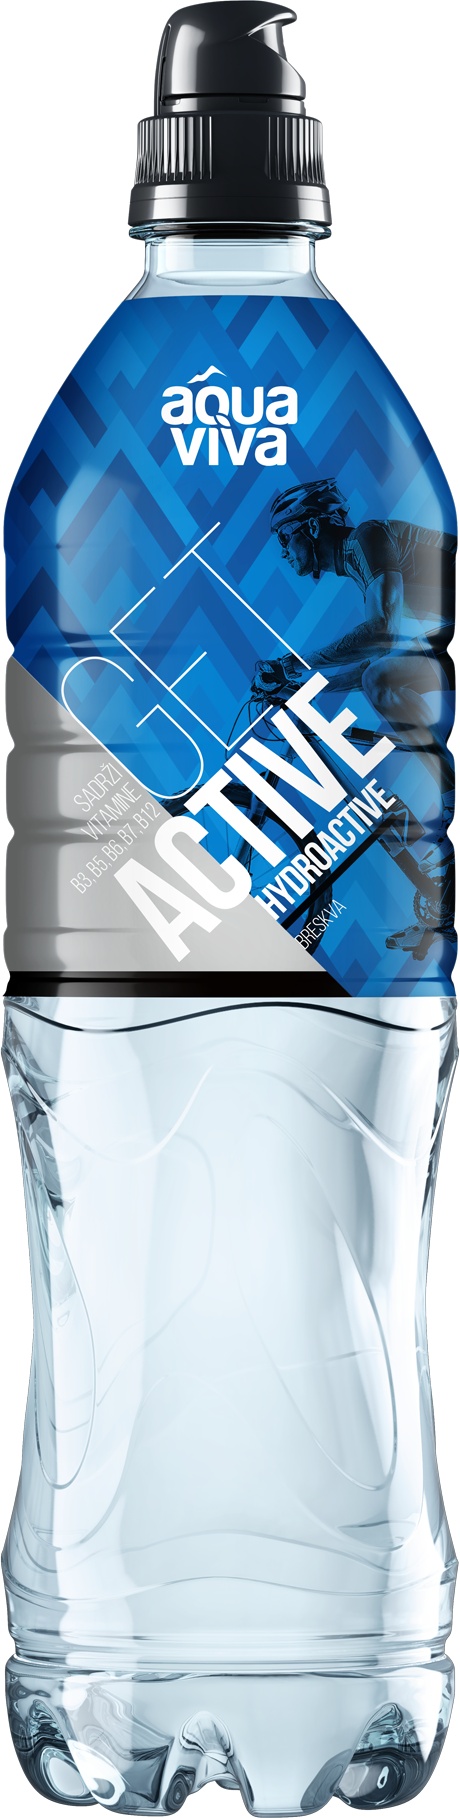 Slika za Mineralna voda Aqua Viva hidroaktiv breskva 0.75l